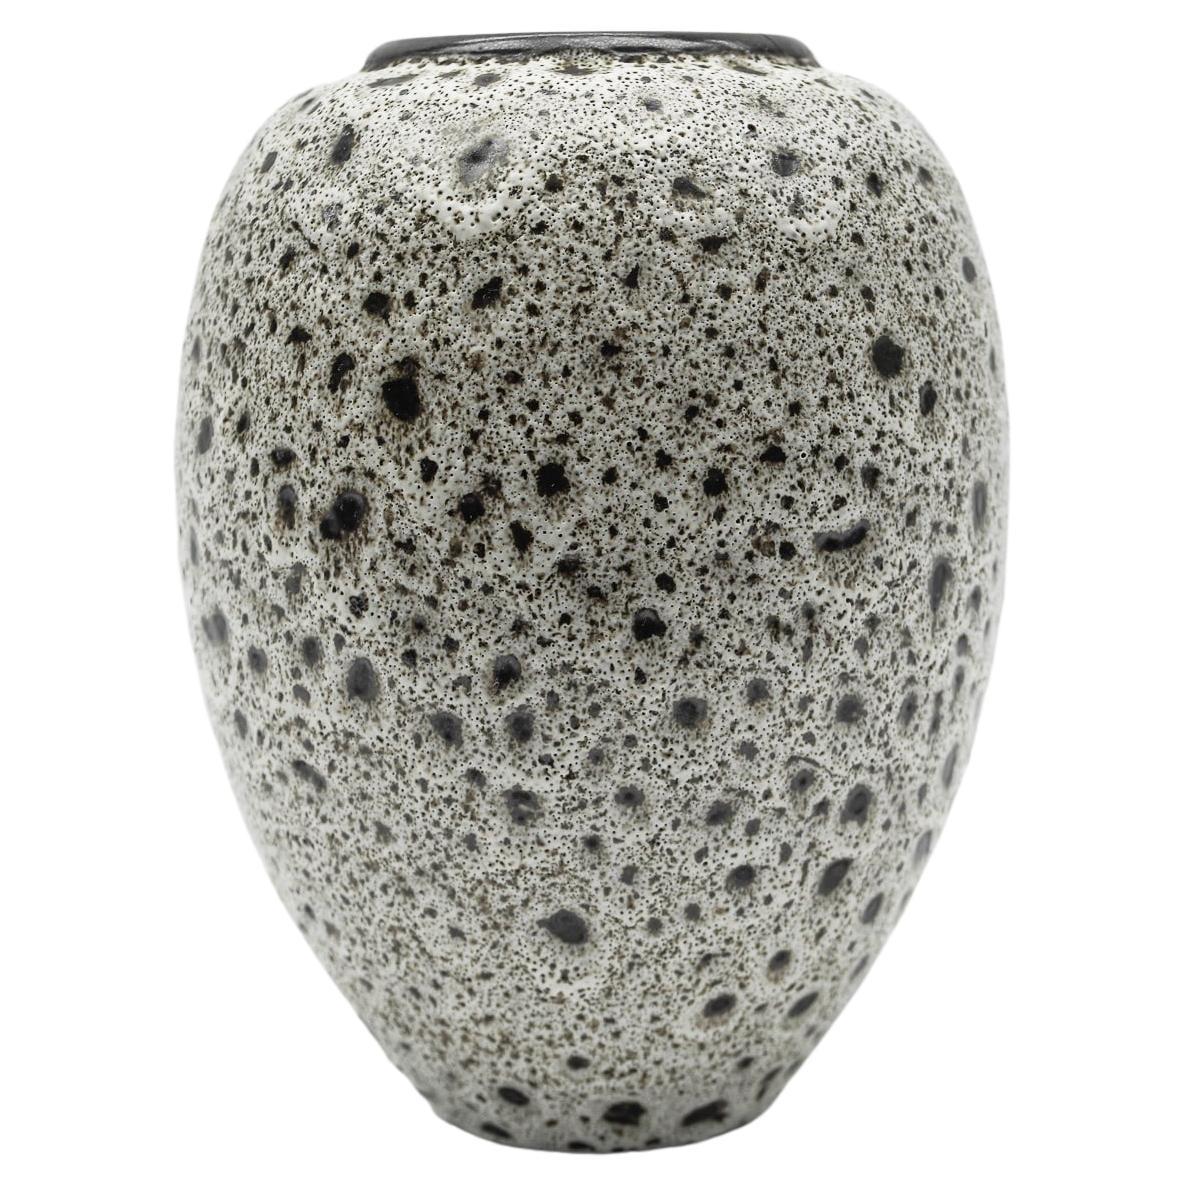 White & Black Studio Ceramic Vase by Wilhelm & Elly Kuch, 1960s, Germany